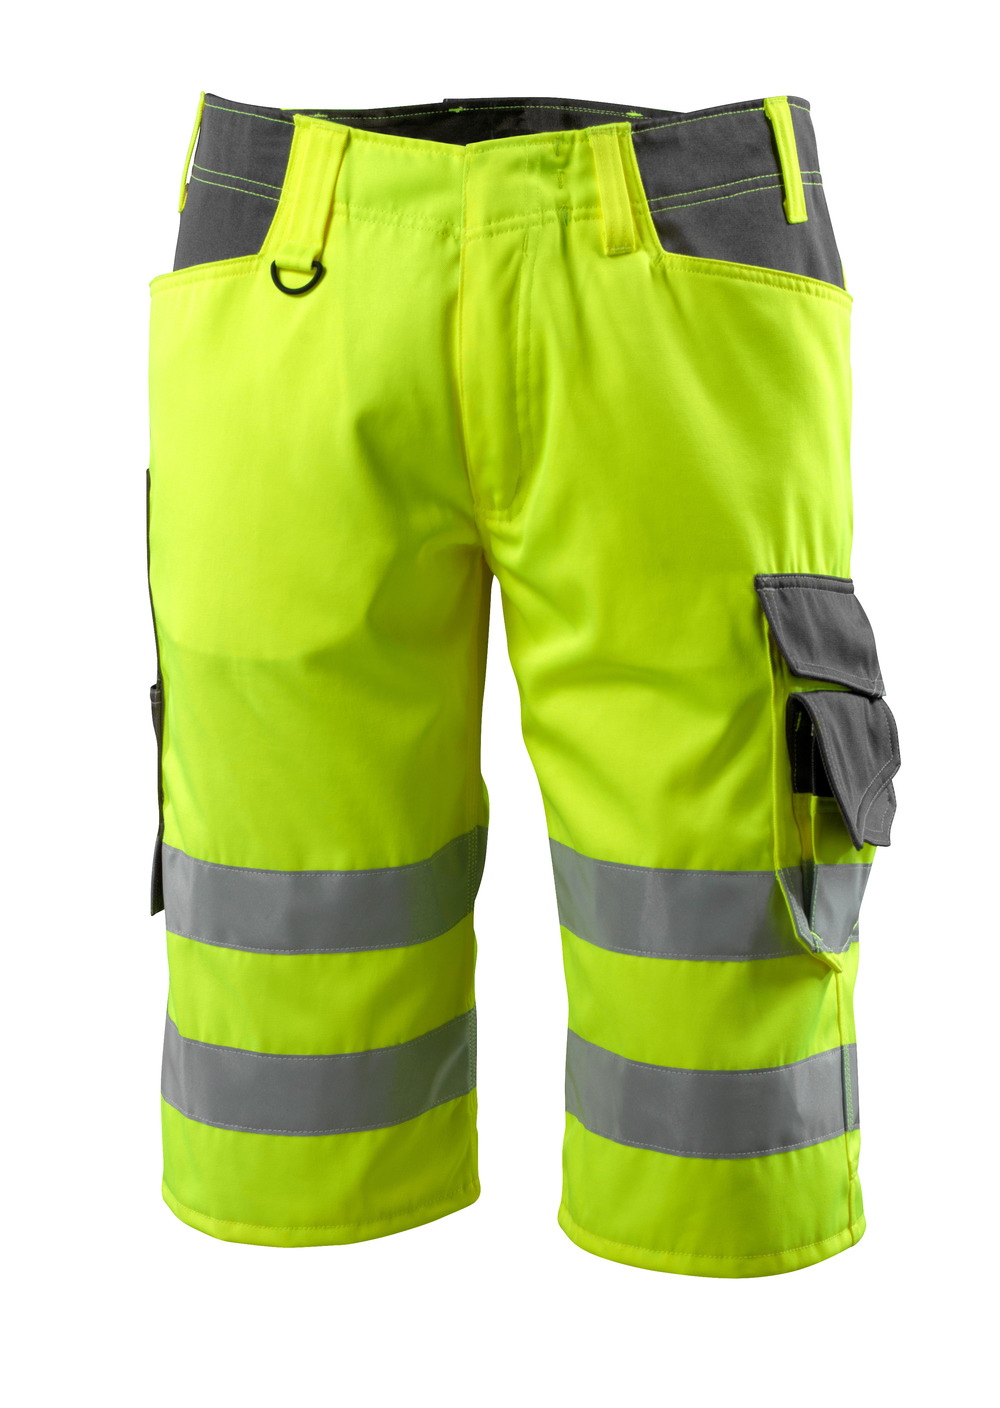 MASCOT-Warnschutz, Warn-Shorts, Luton,  290 g/m², gelb/dunkelanthrazit

